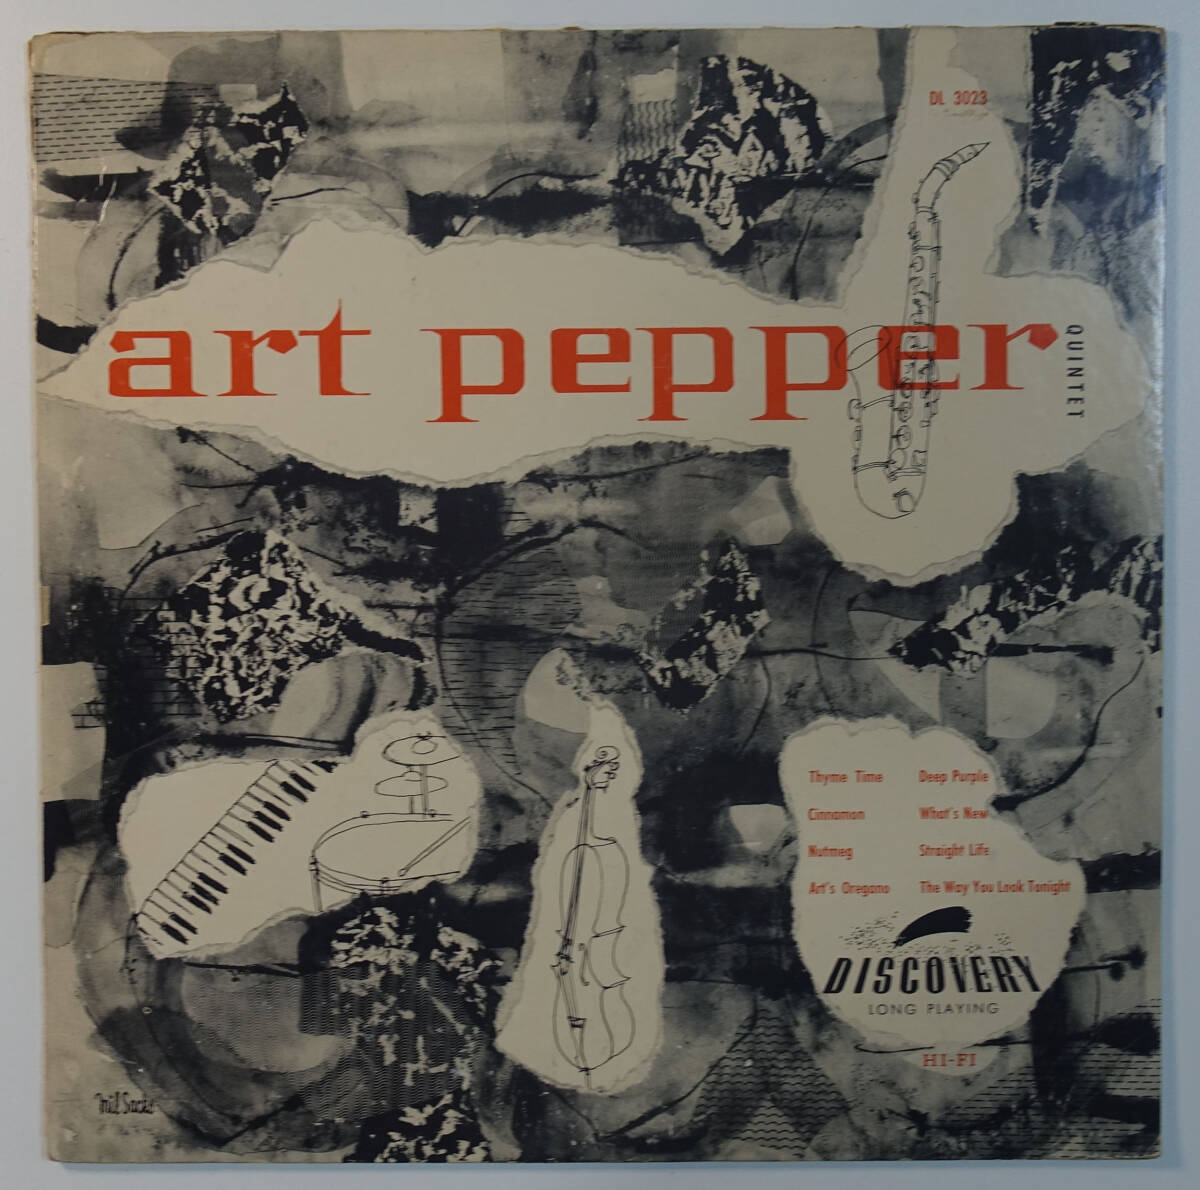 極美盤! US Discovery DL-3023 オリジナル Art Pepper Quintet DG/Flat Edgeの画像1